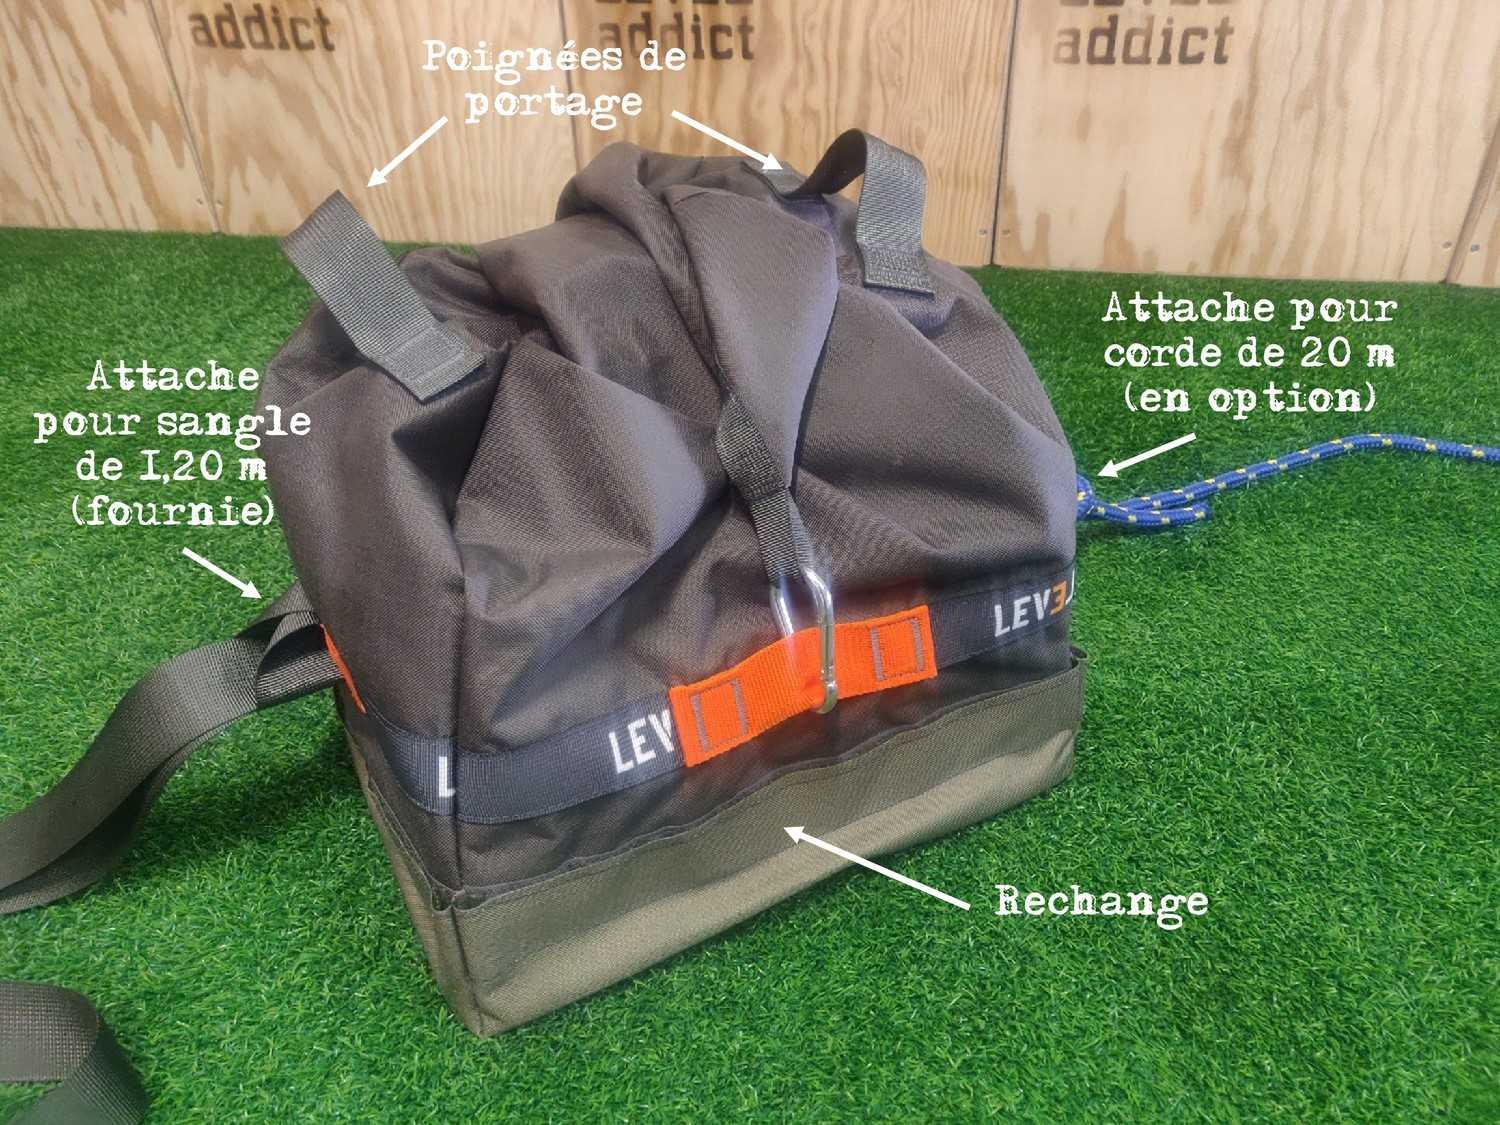 Sandbag de 40 kg avec deux attaches pour corde et sangle pour le parcours professionnel adapté PPA des pompiers - LEVEL addict